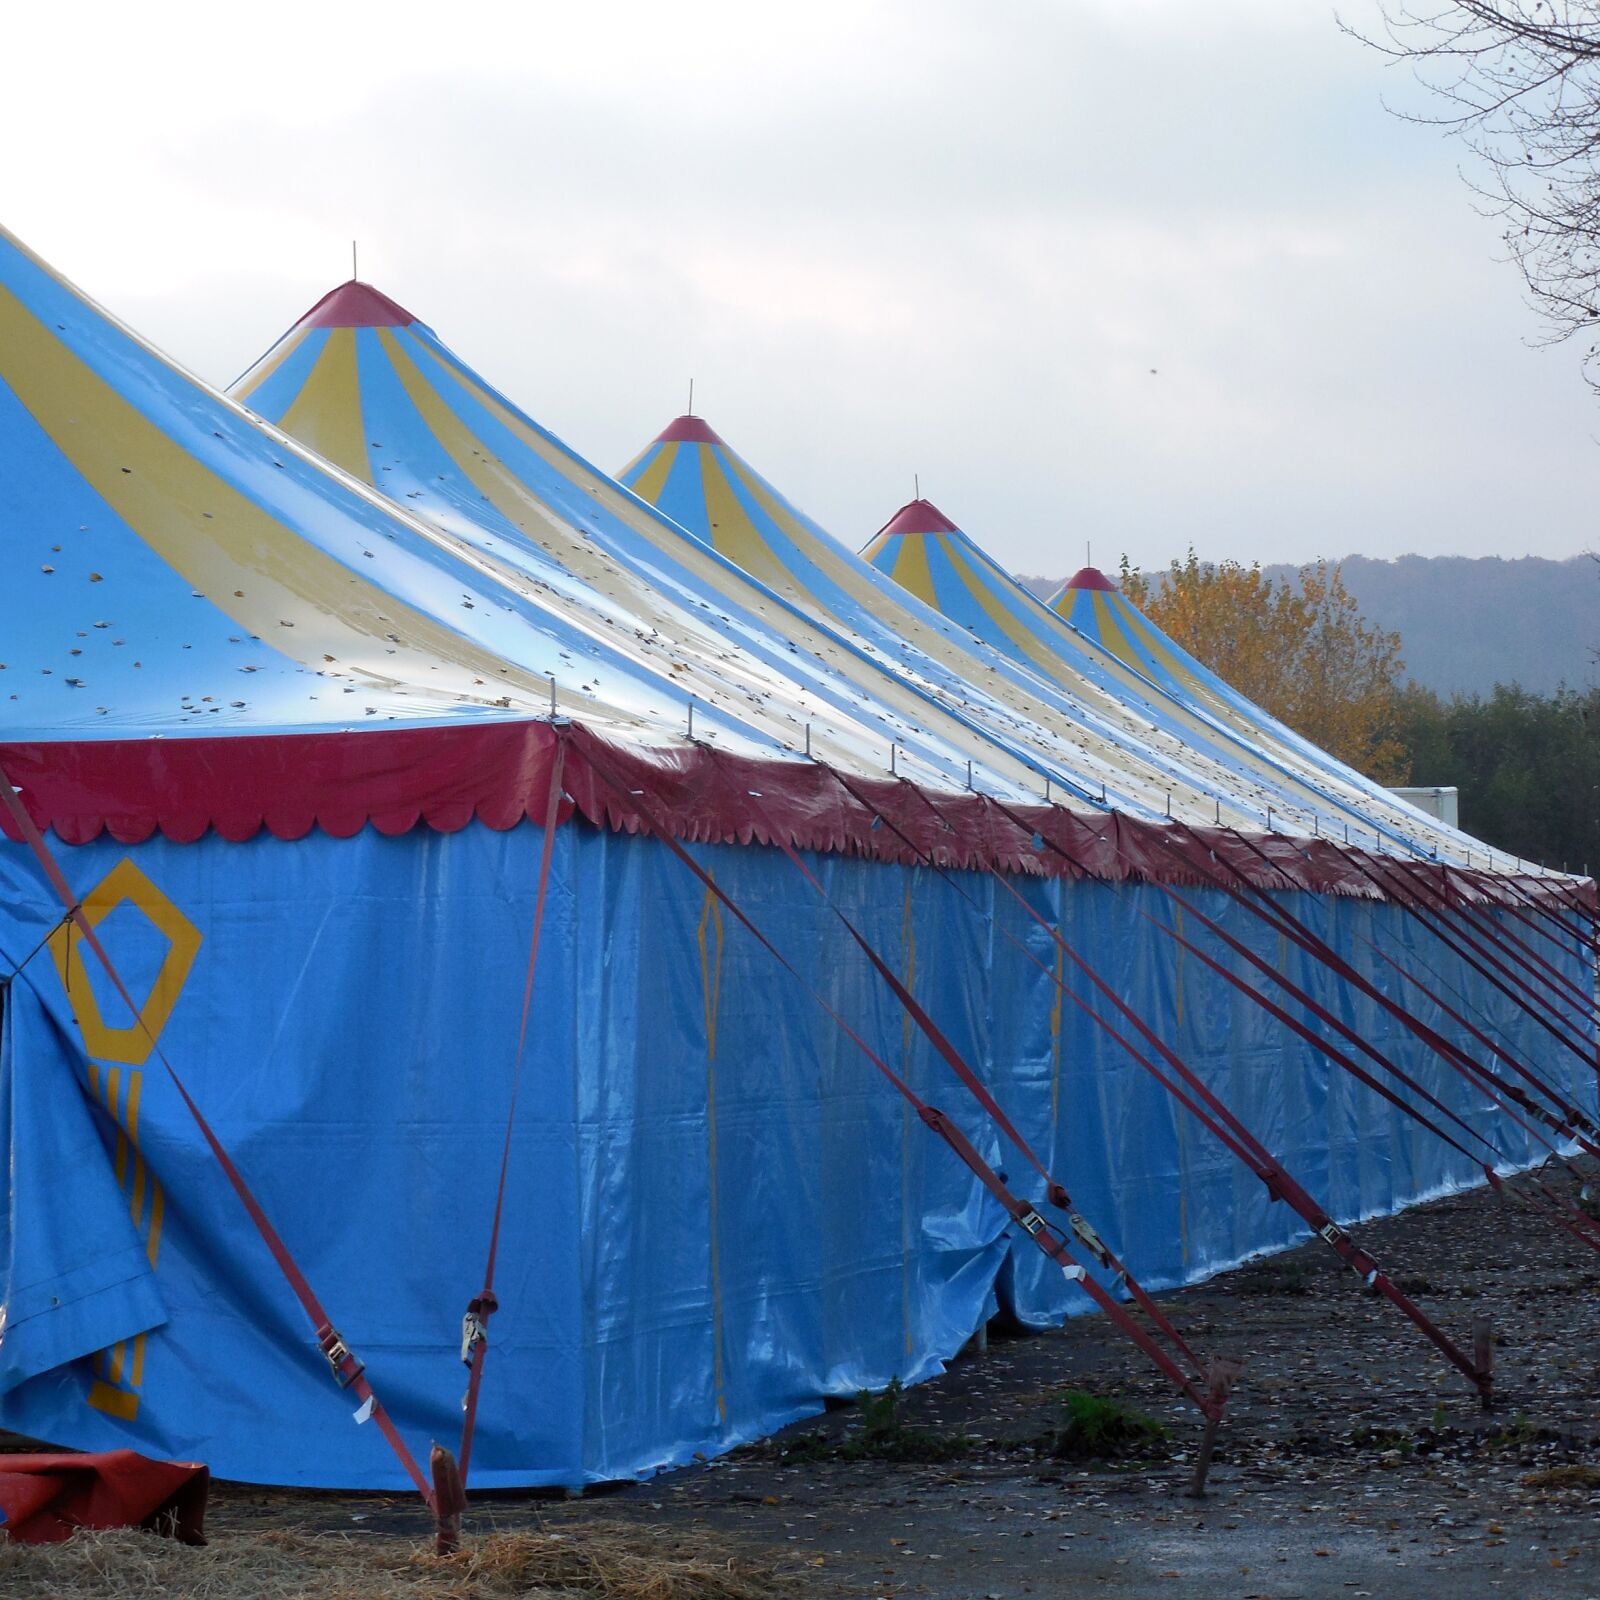 Nikon COOLPIX L620 sample photo. Tent, circus, circus tent photography